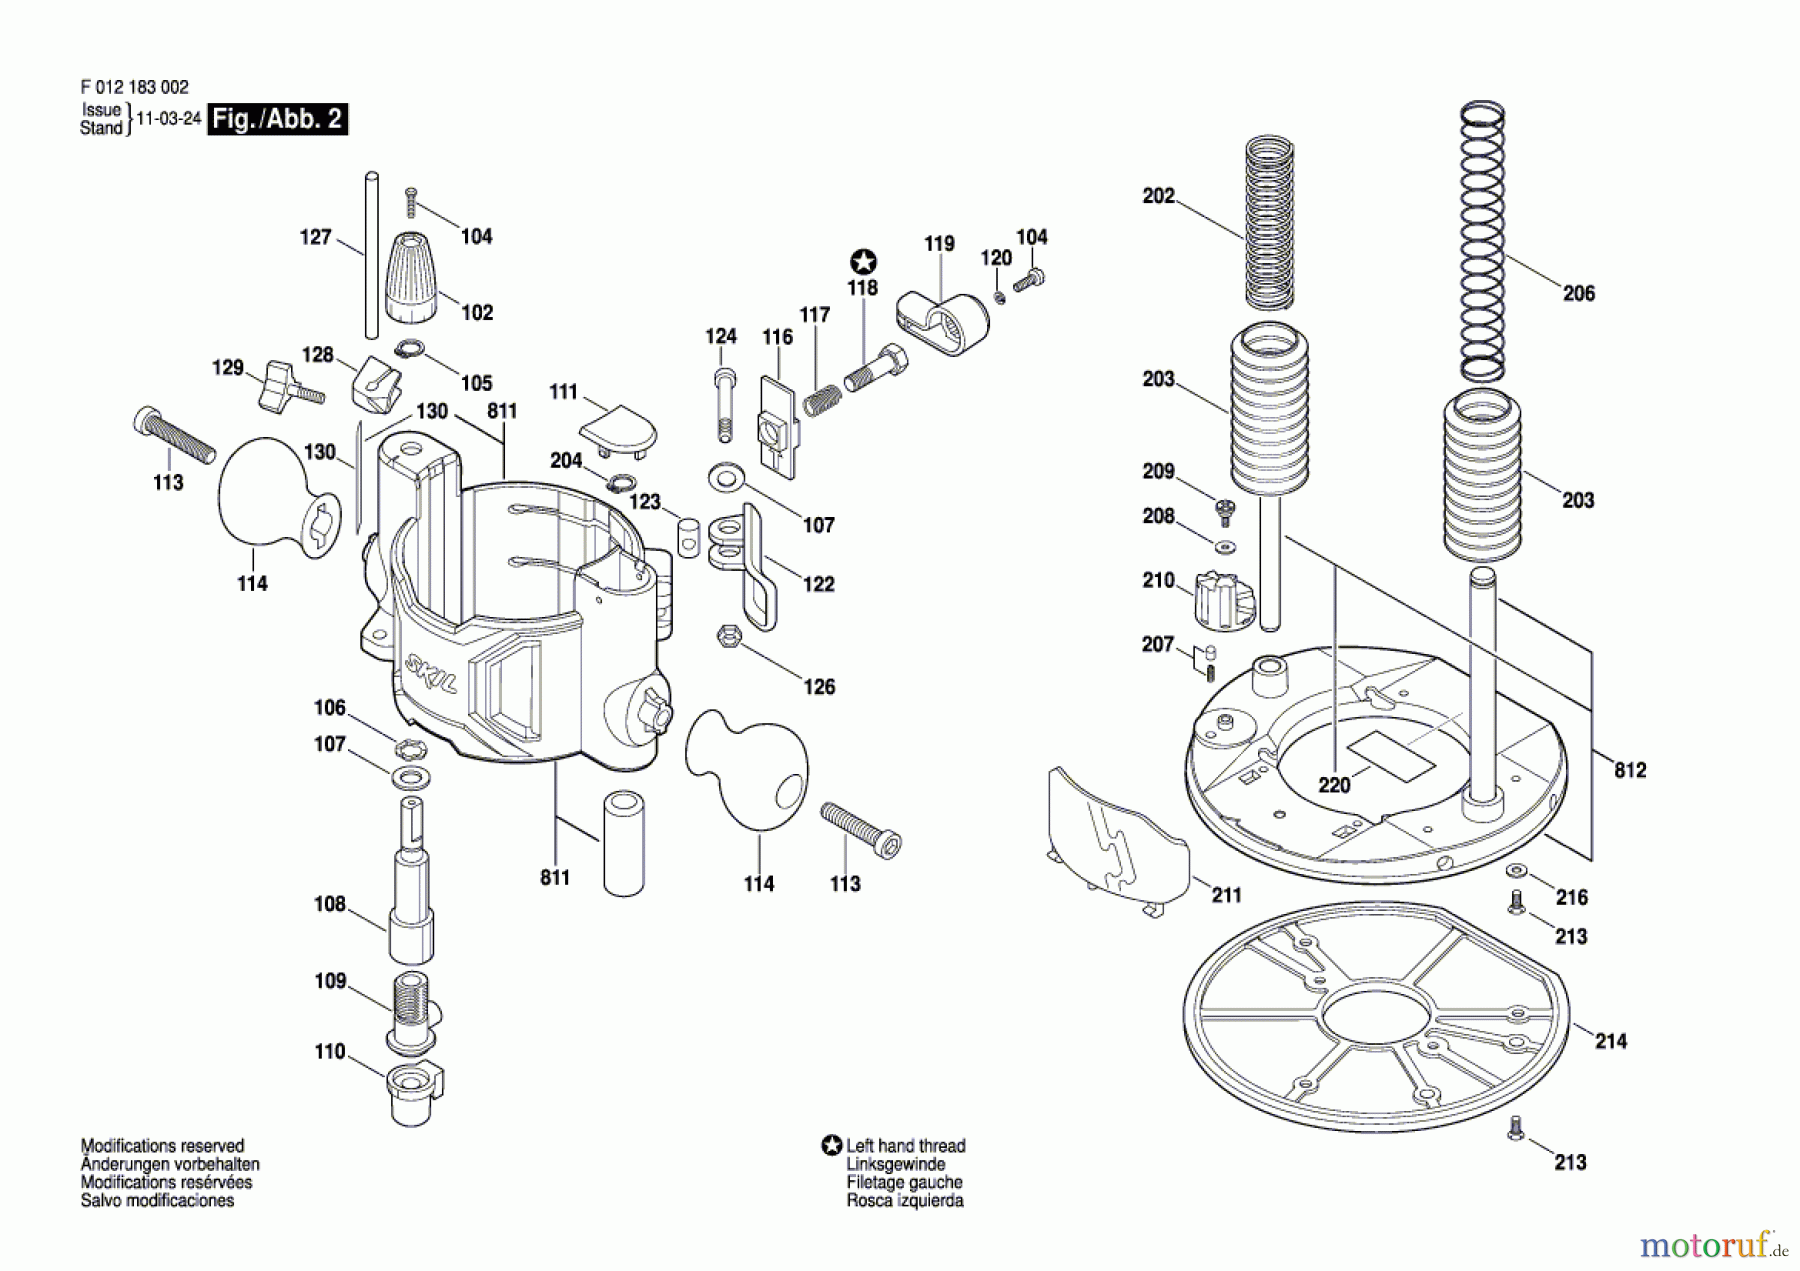  Bosch Werkzeug Oberfräse 1830 Seite 2